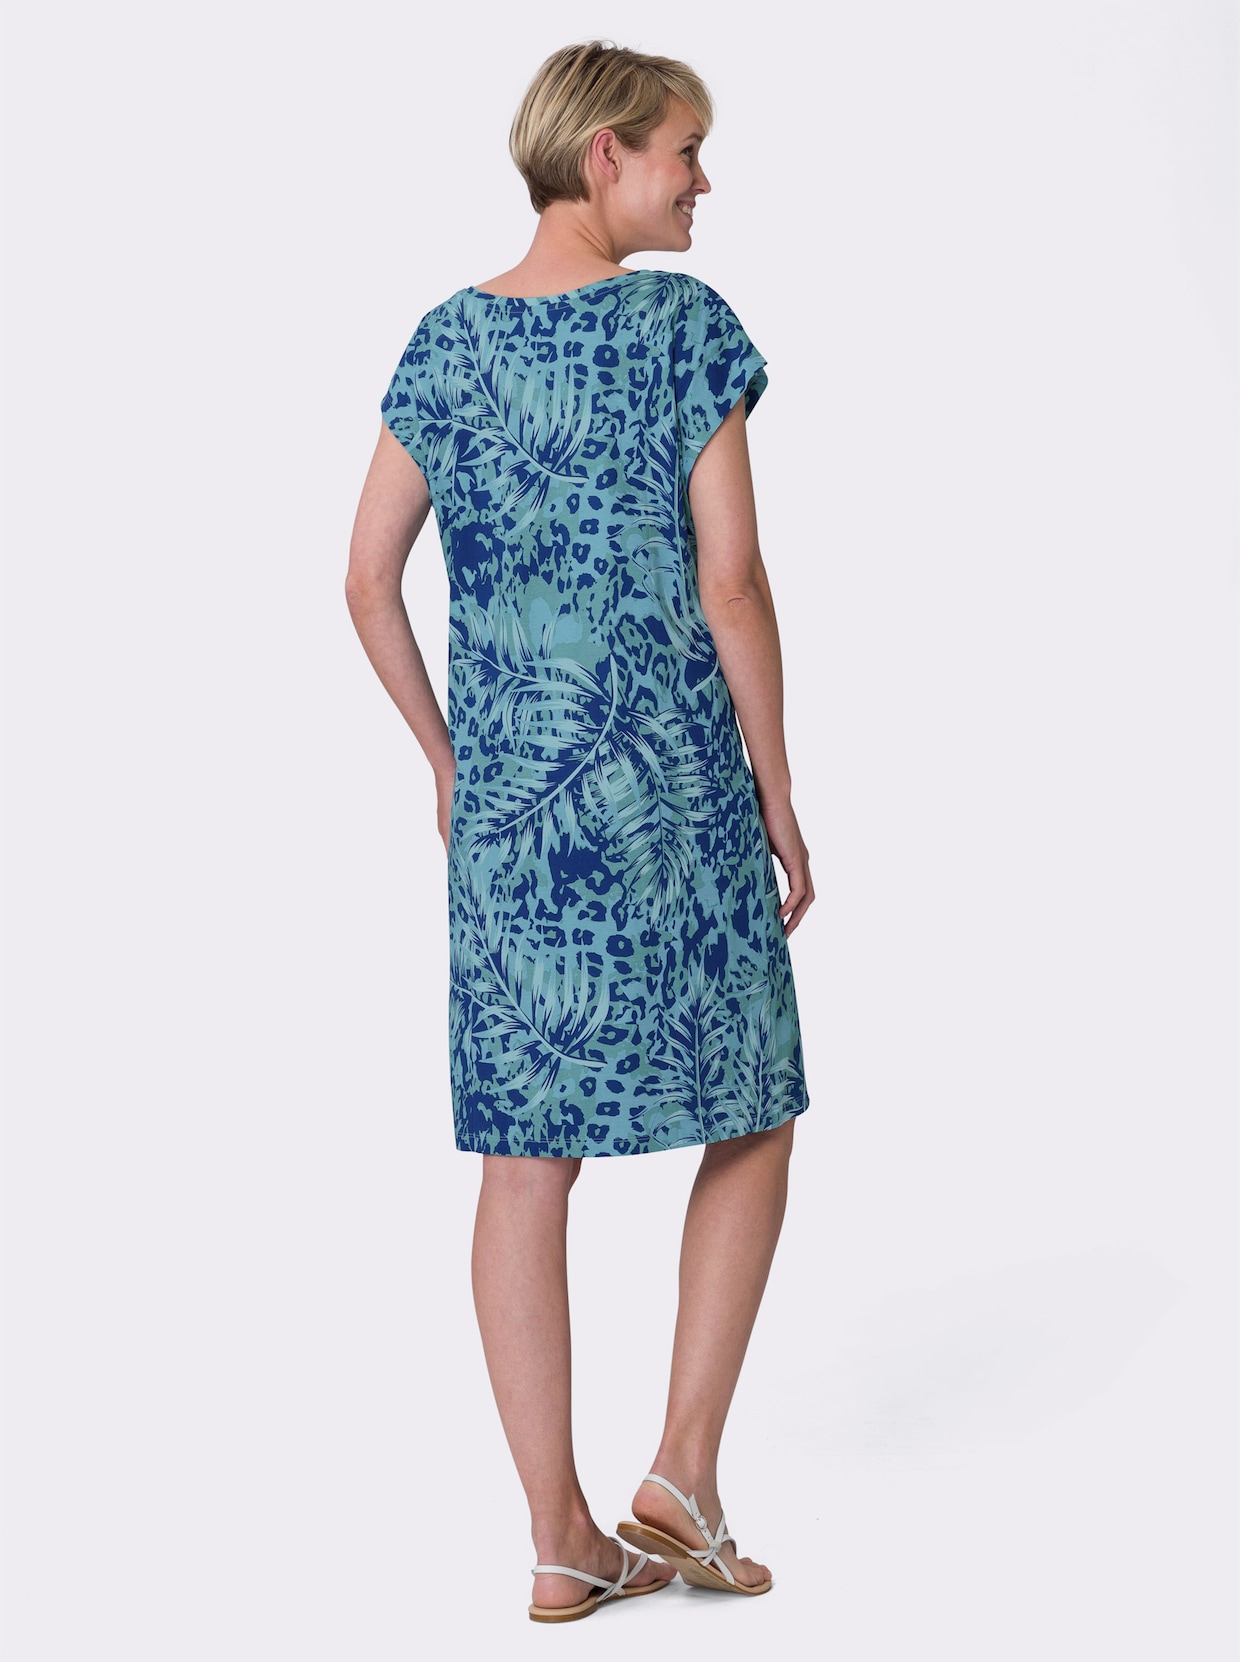 Letní šaty - královská modrá-akvamarínová-potisk